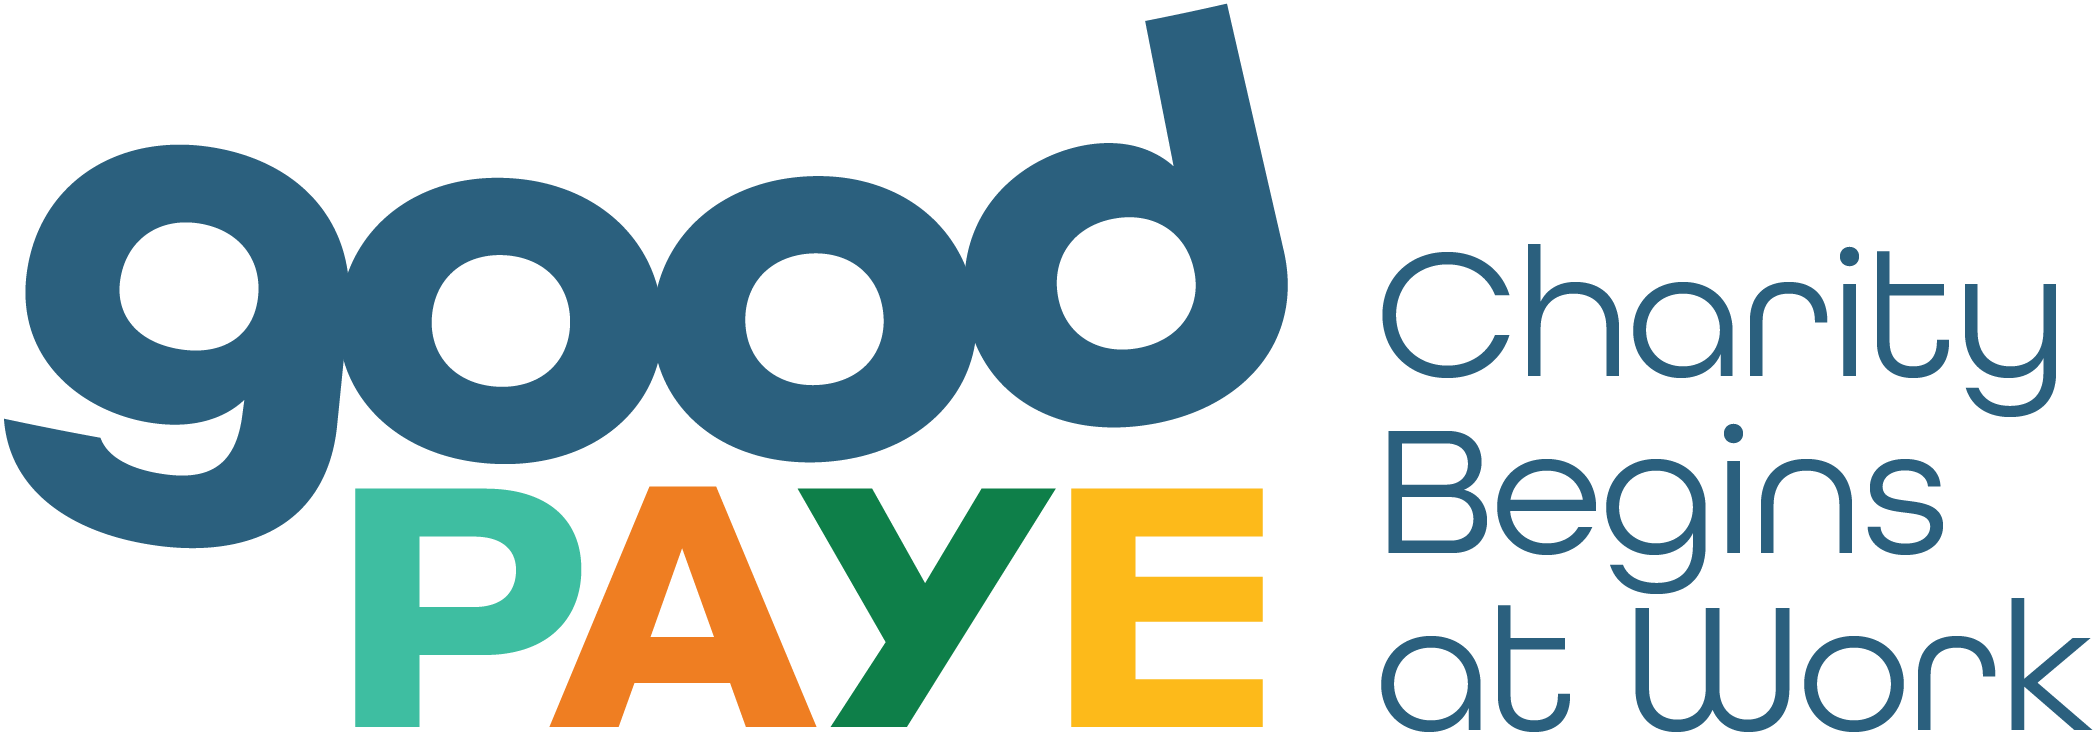 Goodpaye Logo main